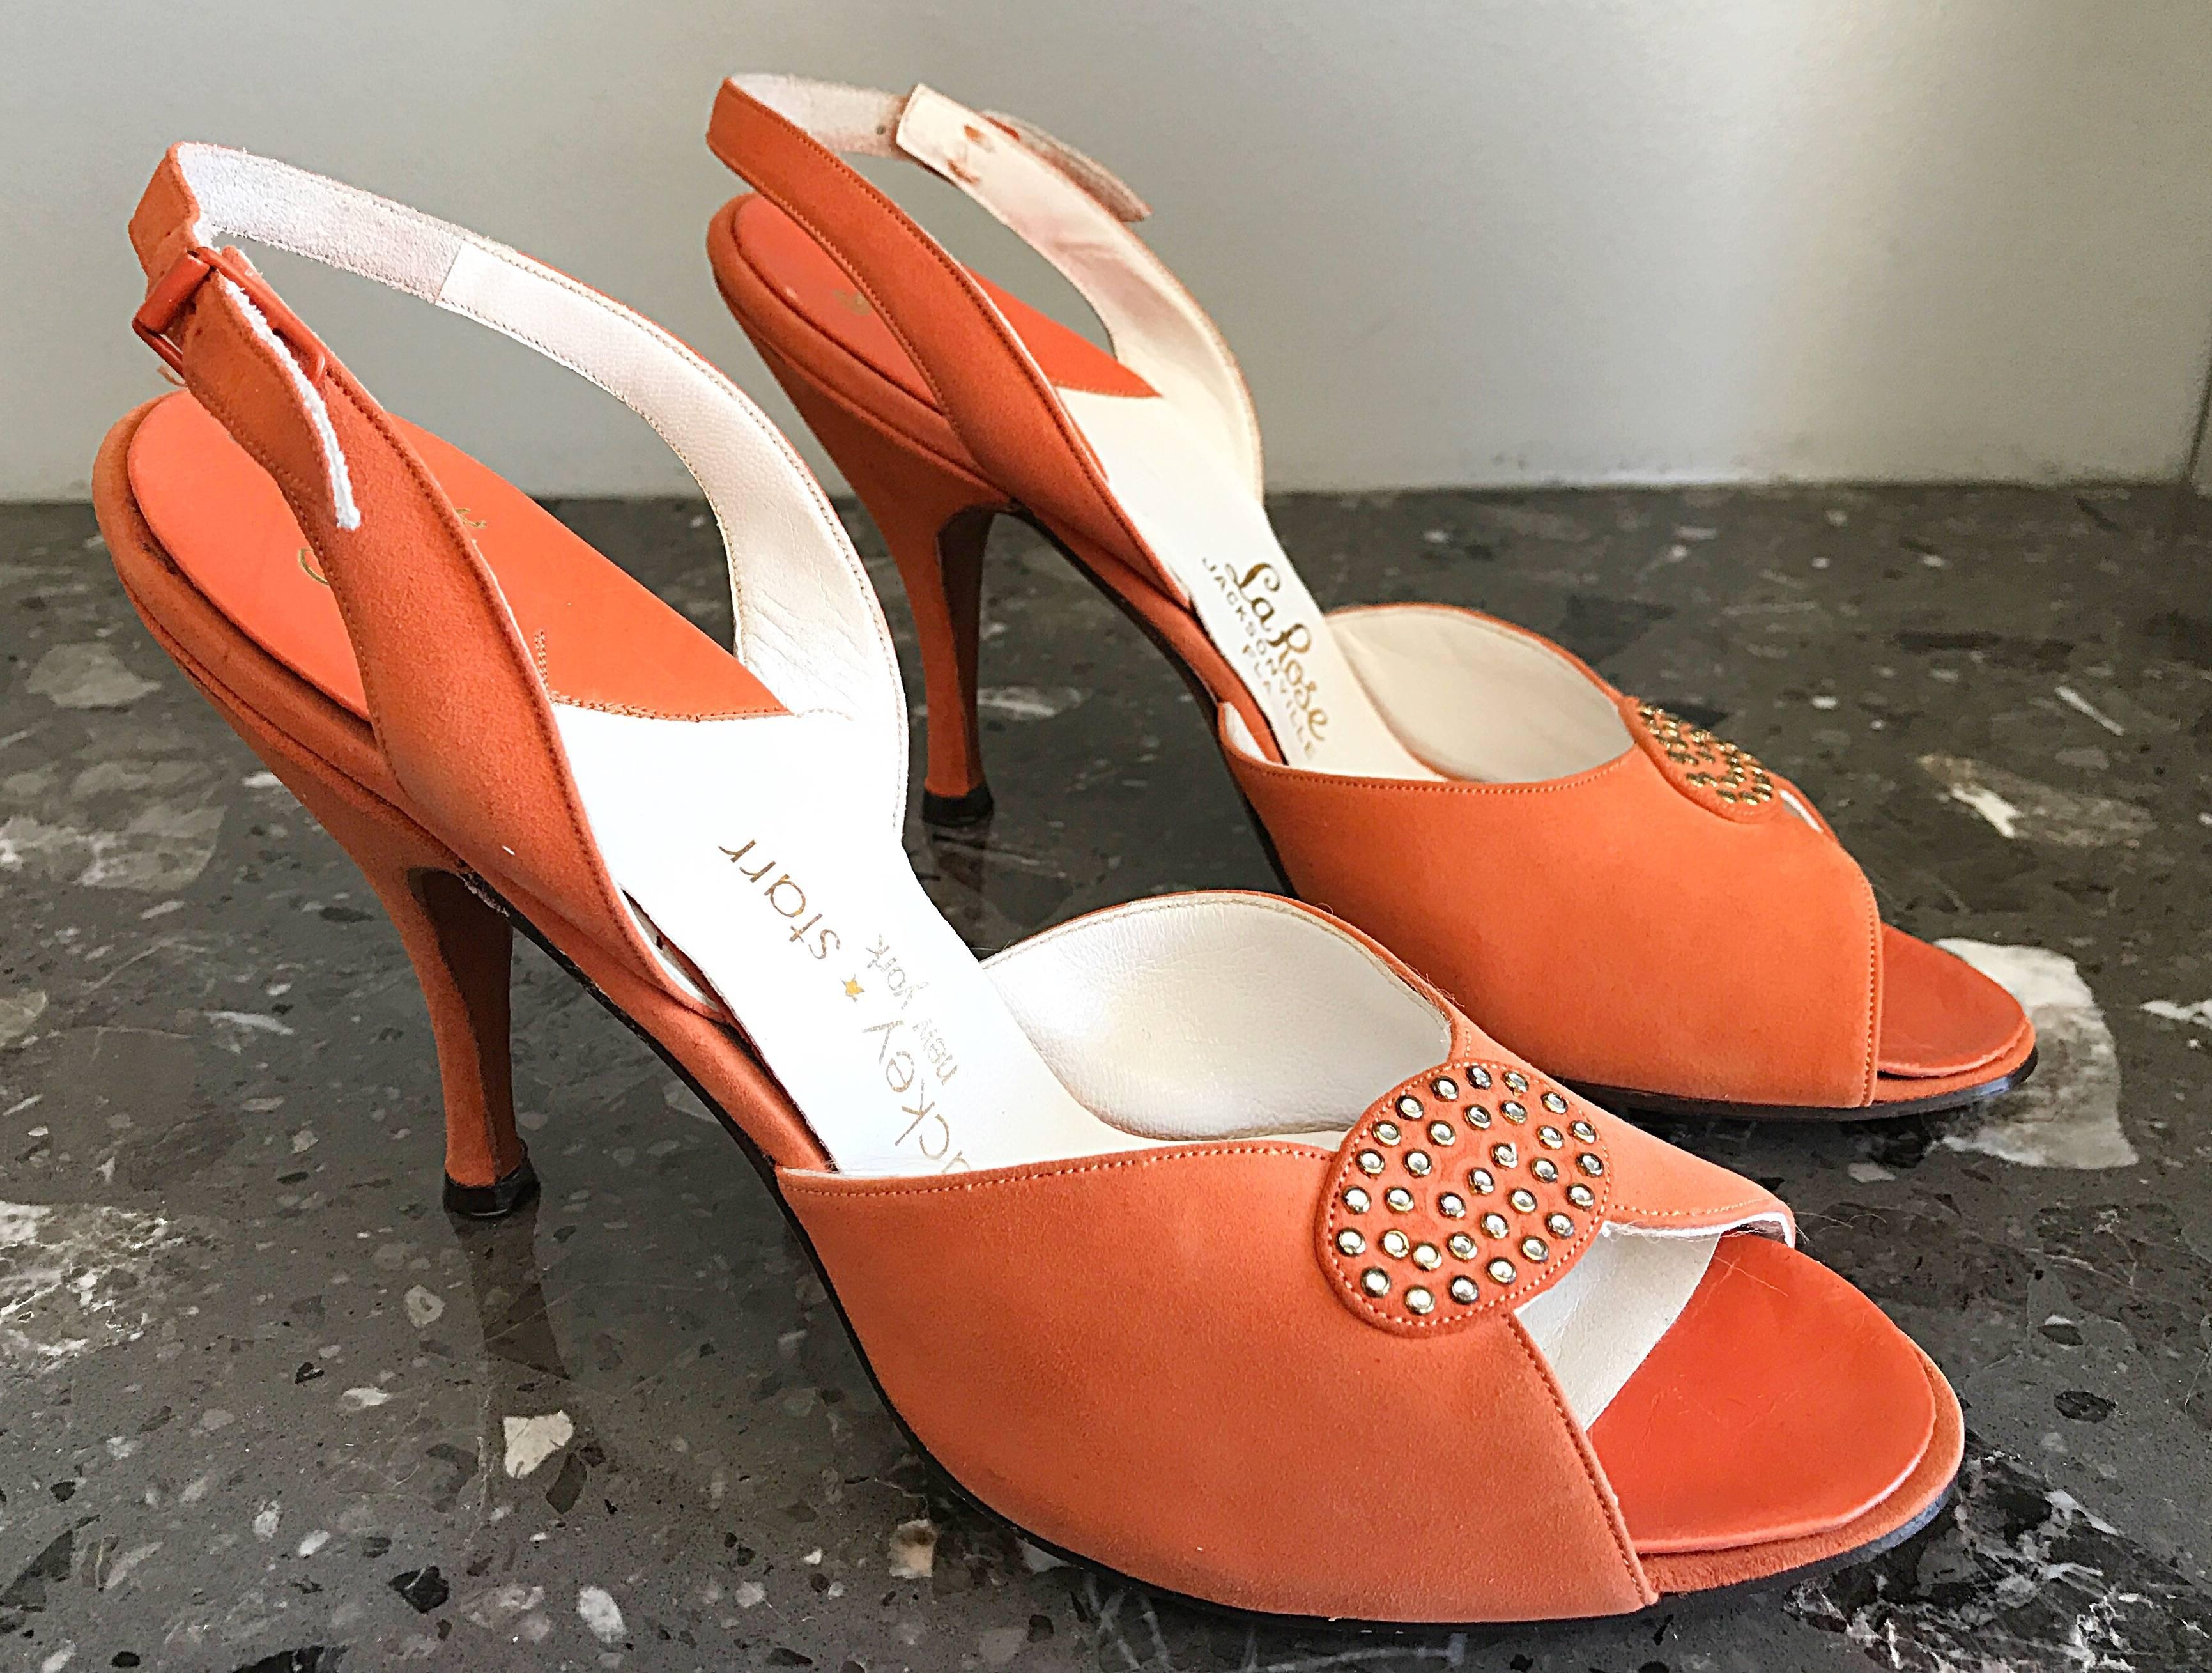 Brand new, never worn 50s vintage MACKEY STARR sorbet orange peep toe slingback high heel shoes ! Les orteils sont ornés de strass. Courroie arrière réglable. Semelle en cuir. Idéal avec des shorts, des jeans, une jupe ou une robe. 
En excellent